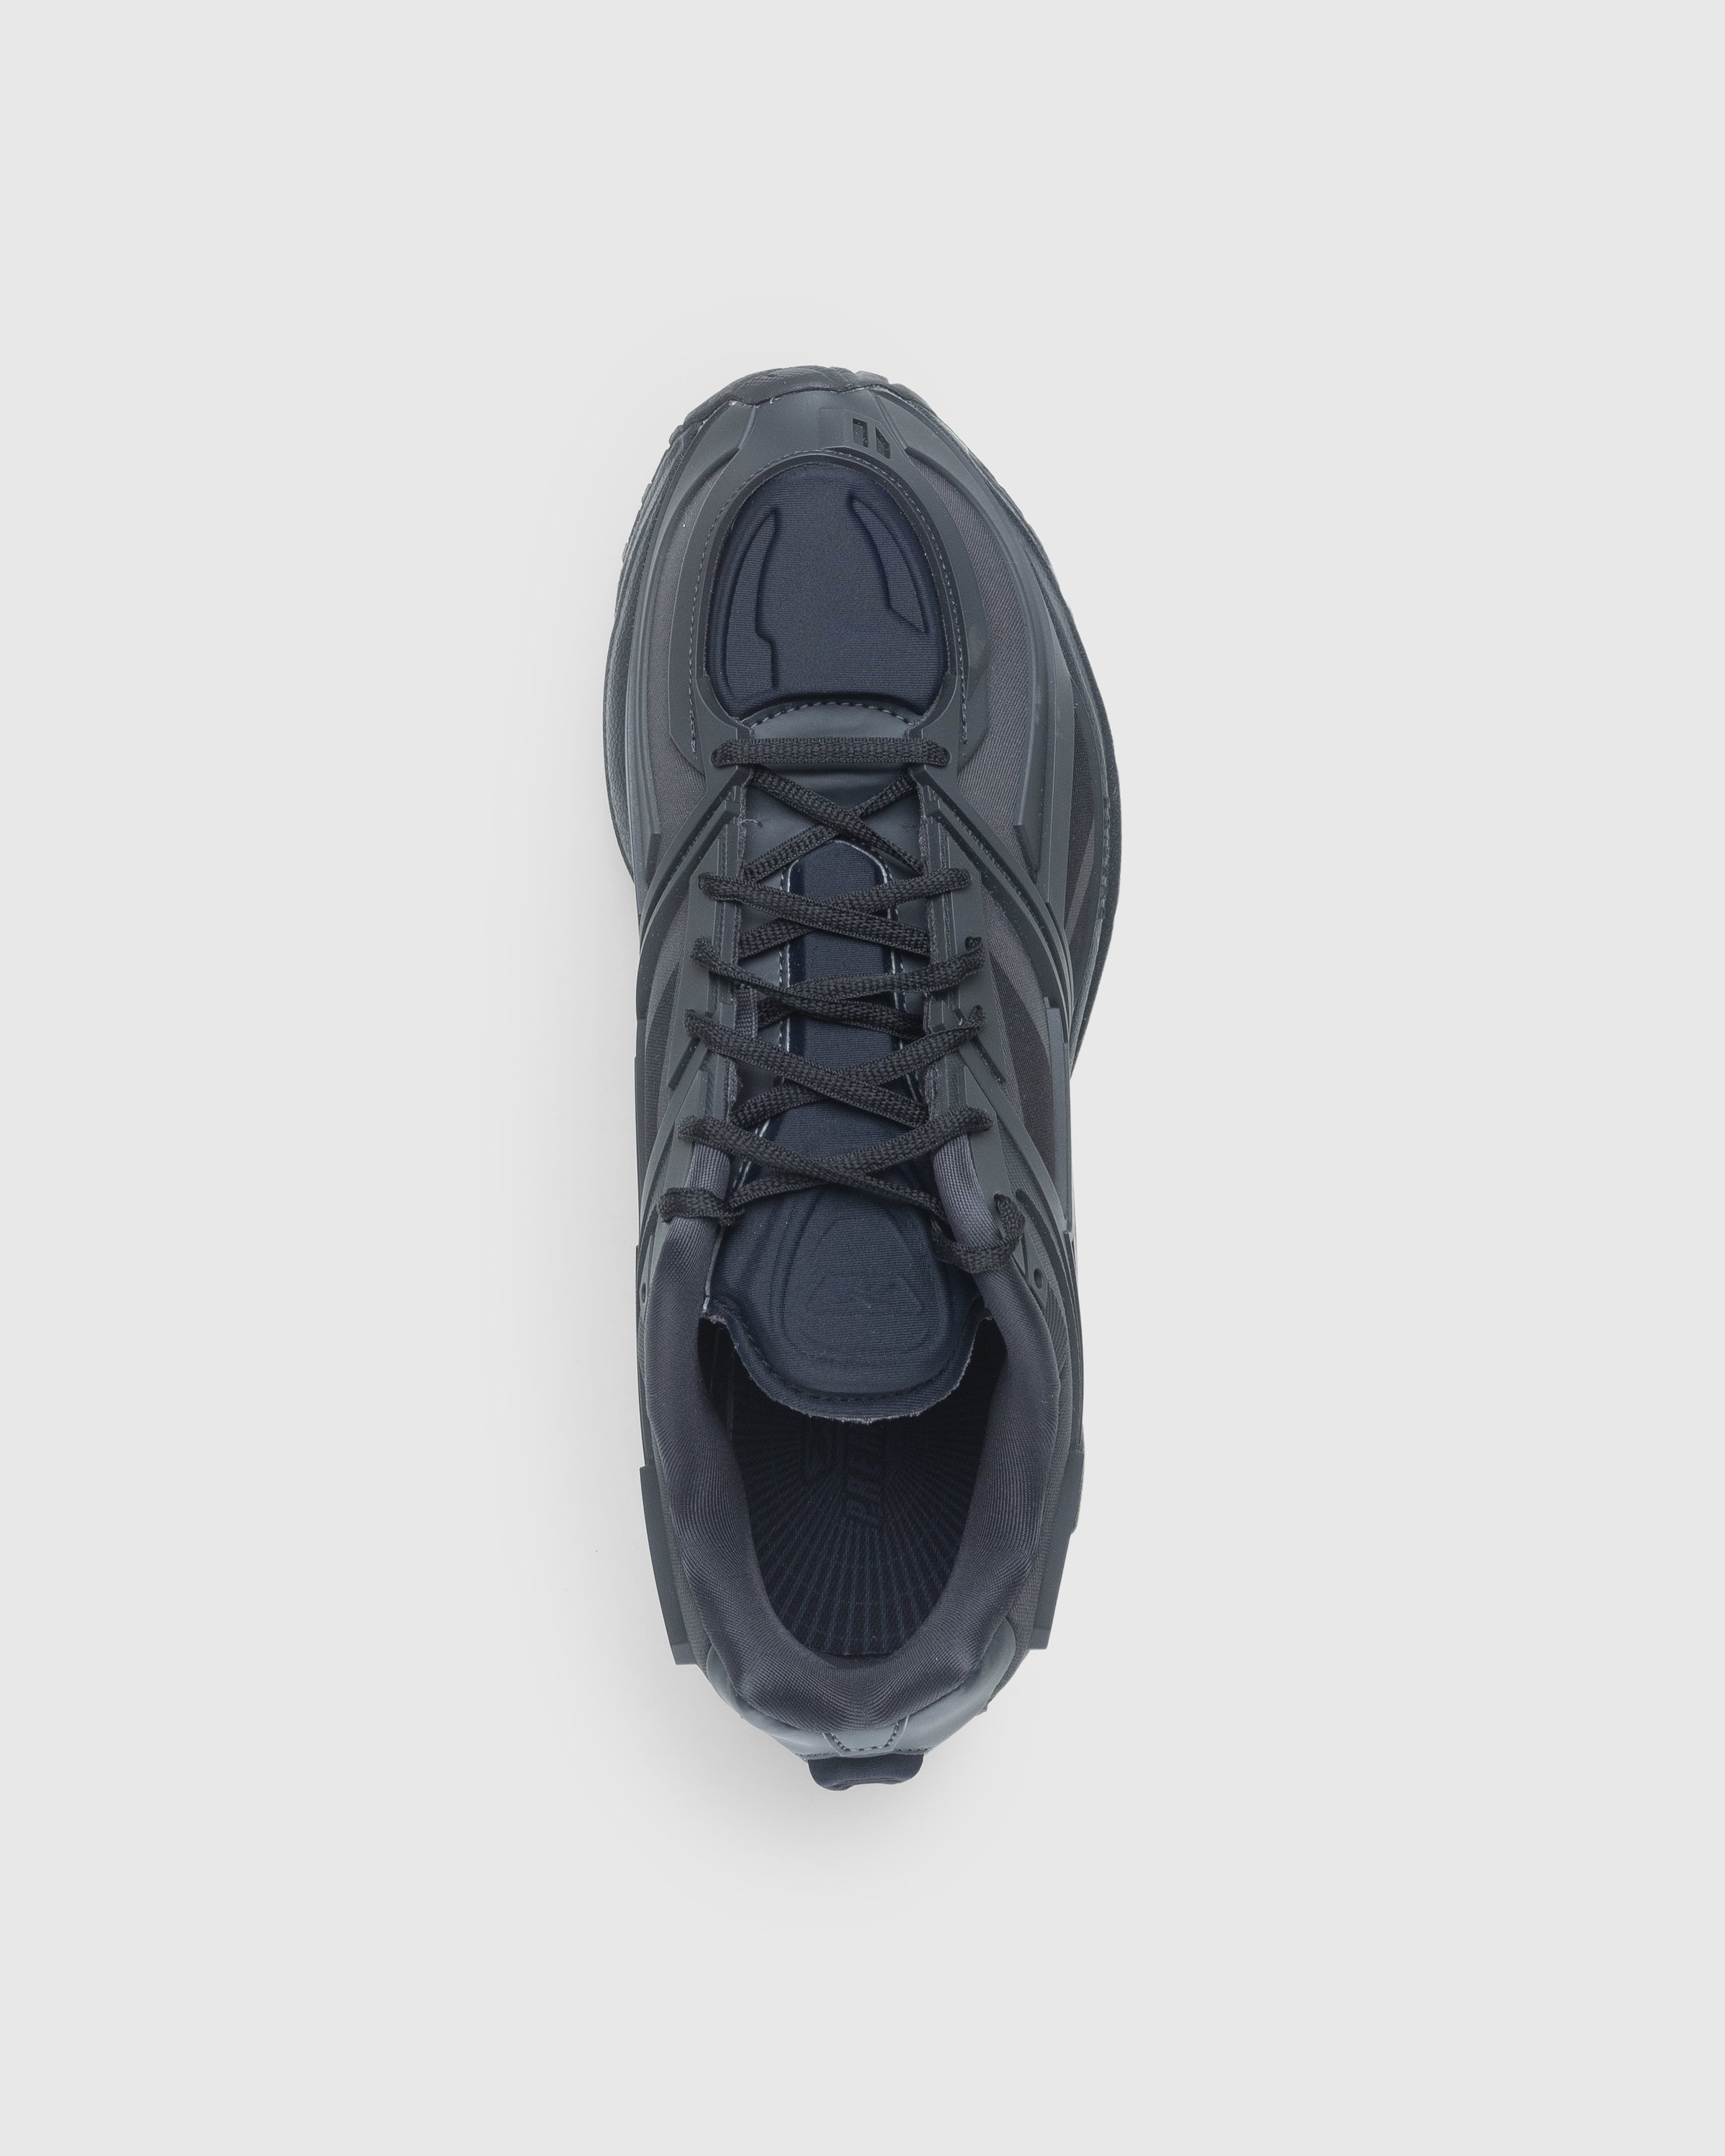 Reebok - Premier Road Black - Footwear - Black - Image 5